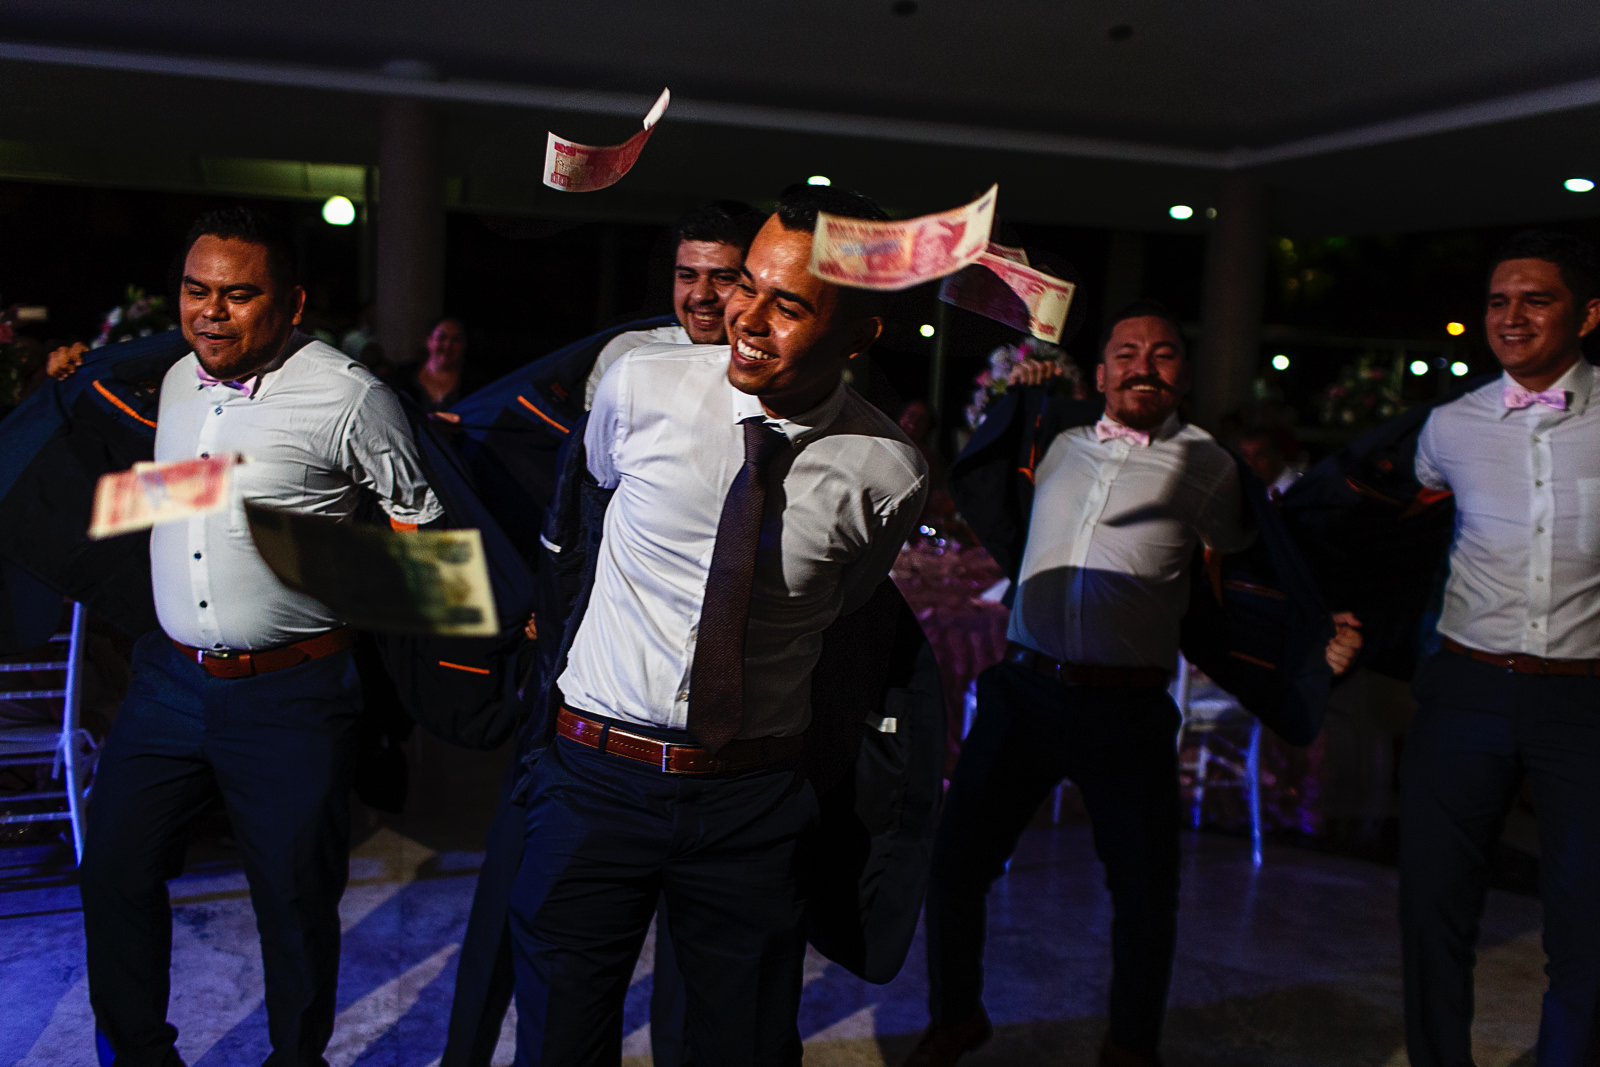 Novio y amigos bailan y se quitan el saco del traje mientras hay billetes volando arrojados por las damas durante la fiesta de la boda